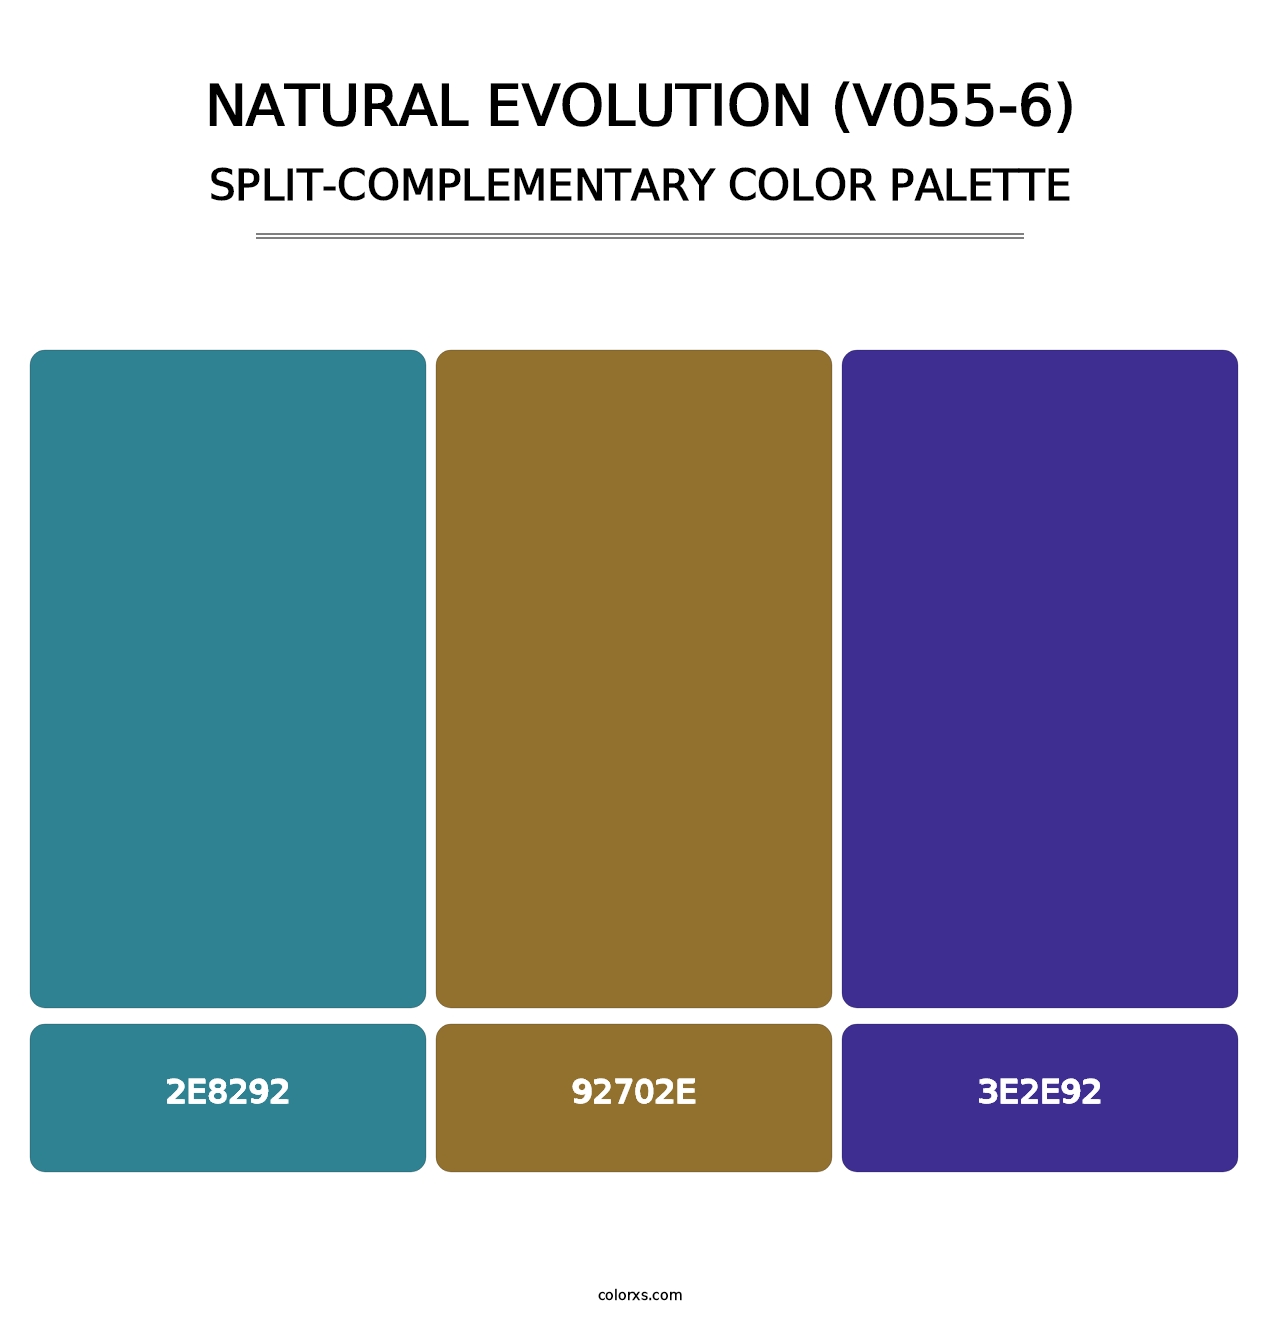 Natural Evolution (V055-6) - Split-Complementary Color Palette